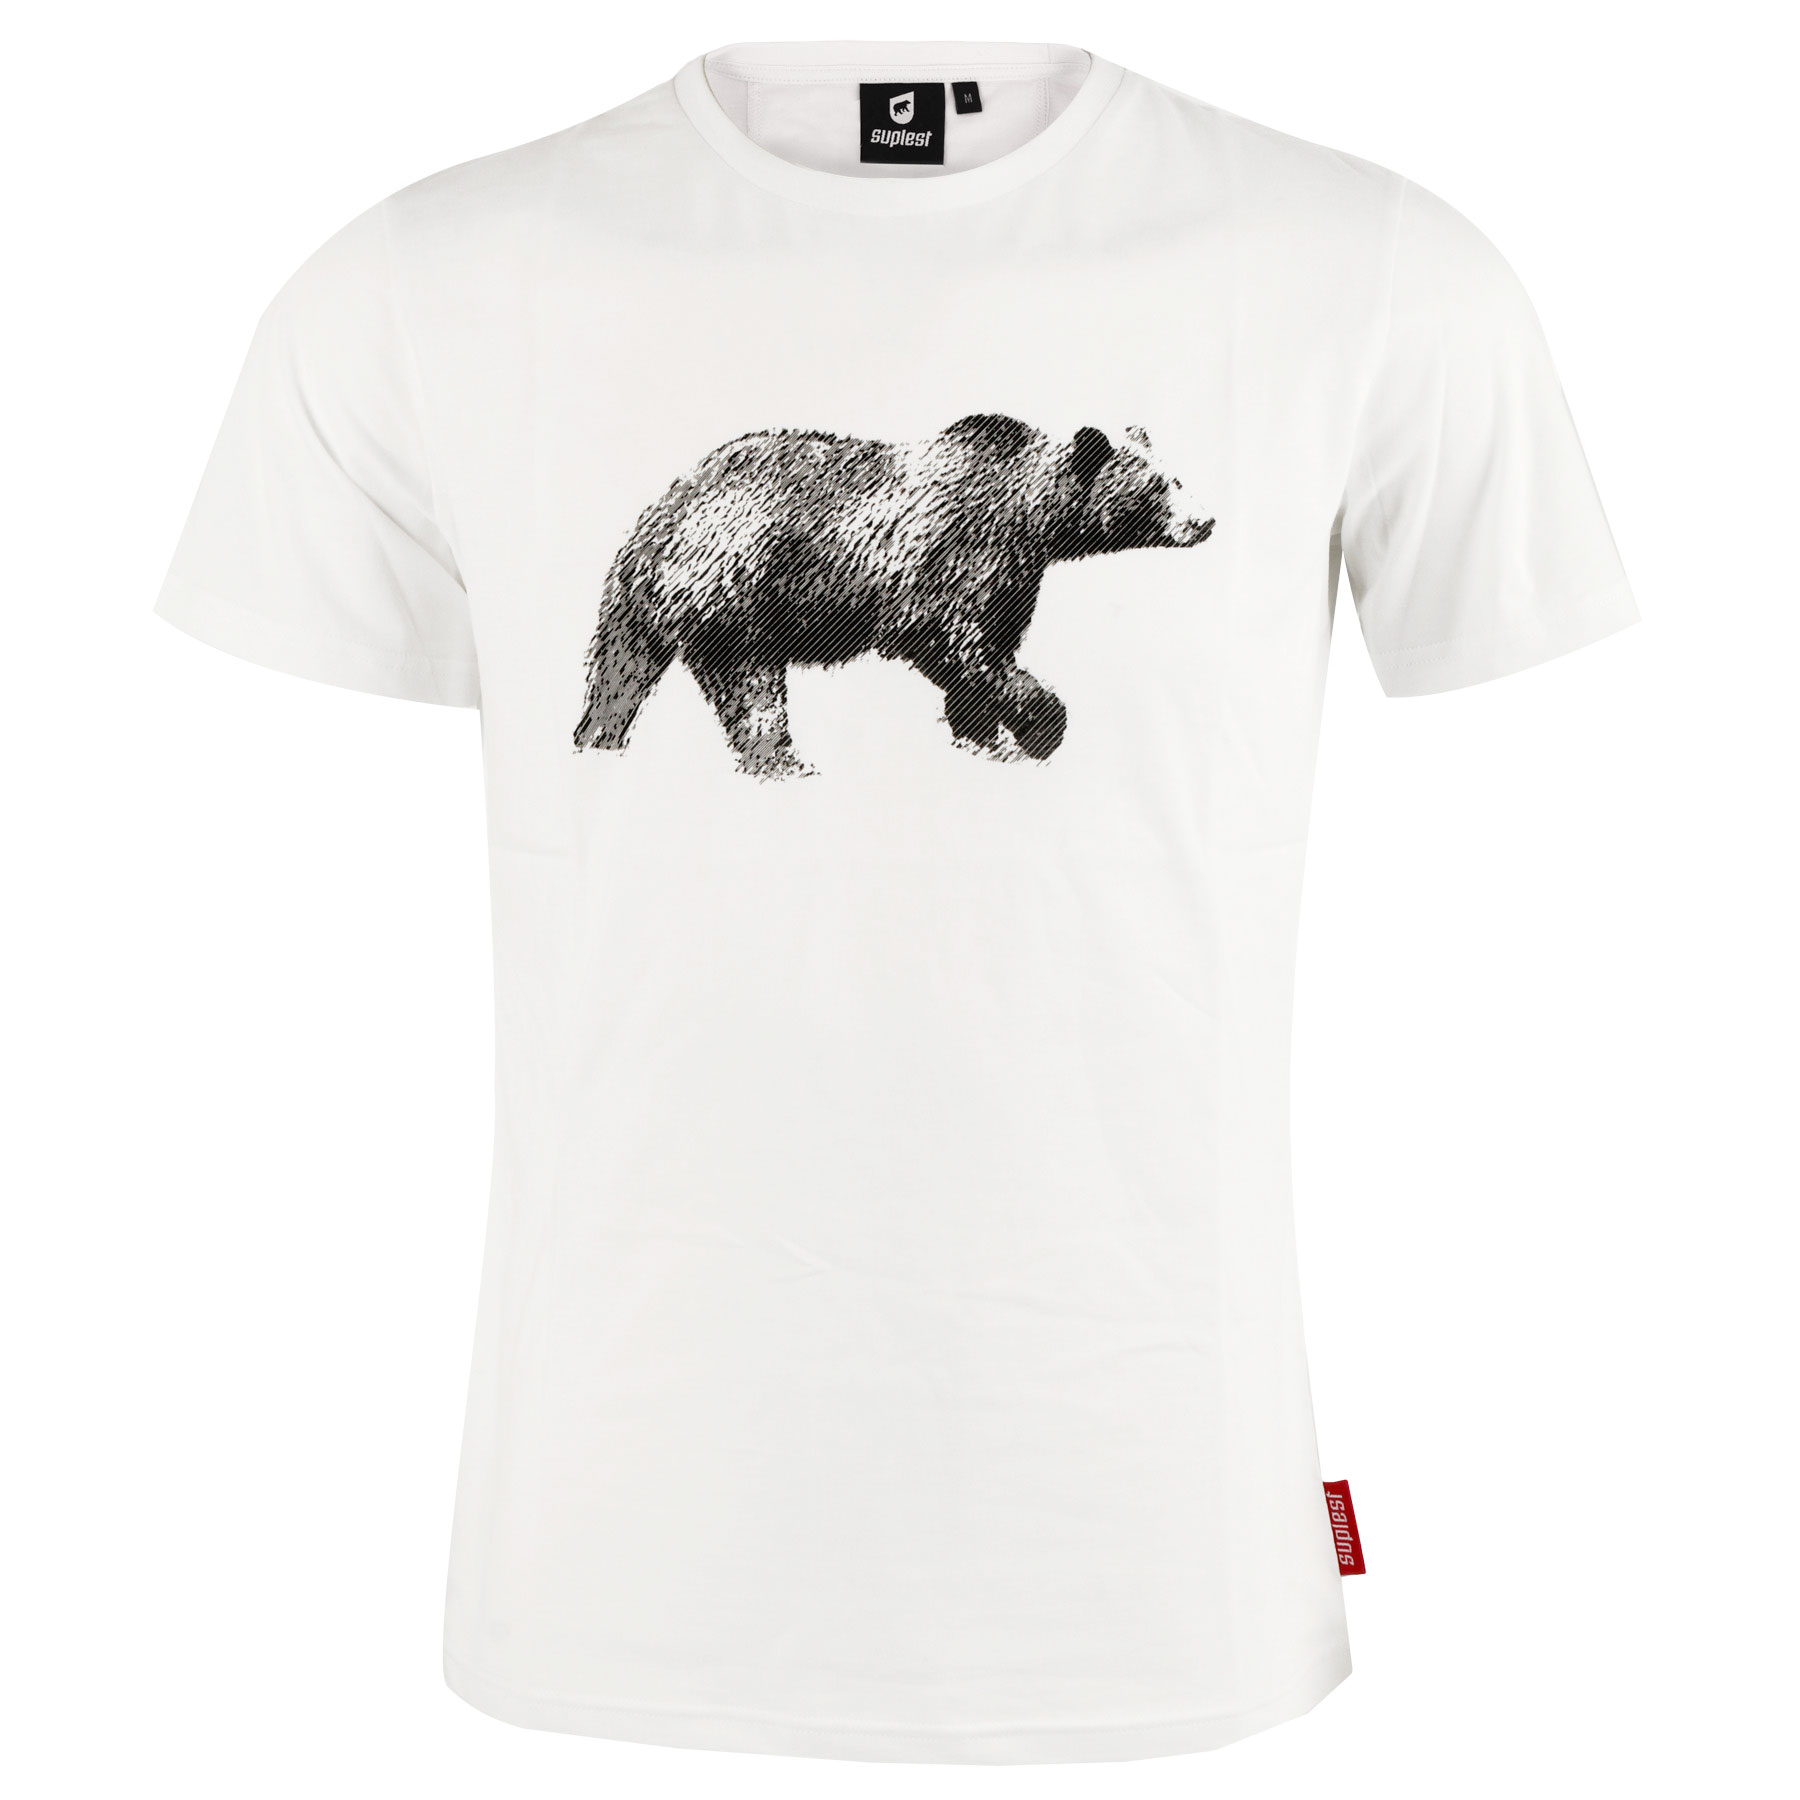 Produktbild von Suplest Bear T-Shirt - weiß 05.055.